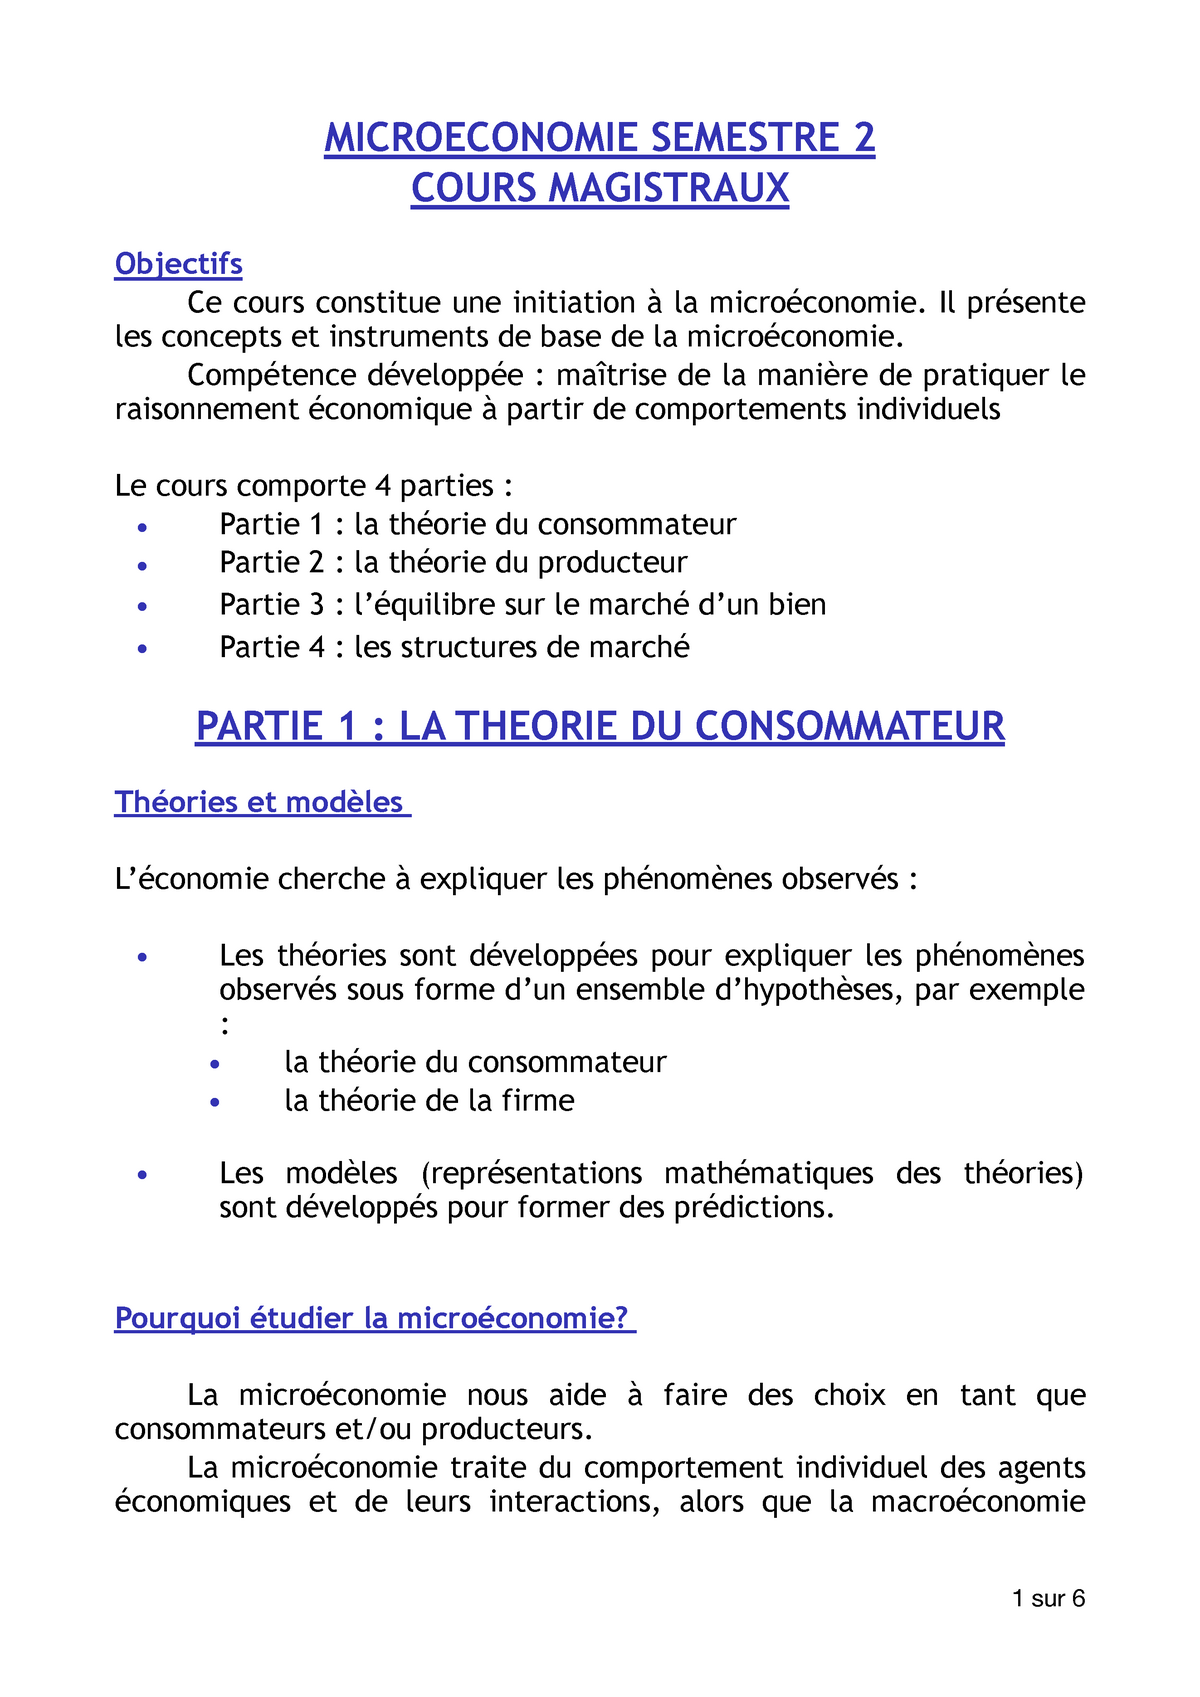 Miicroeco Intro Notes De Cours Semestre 2 Studocu - 